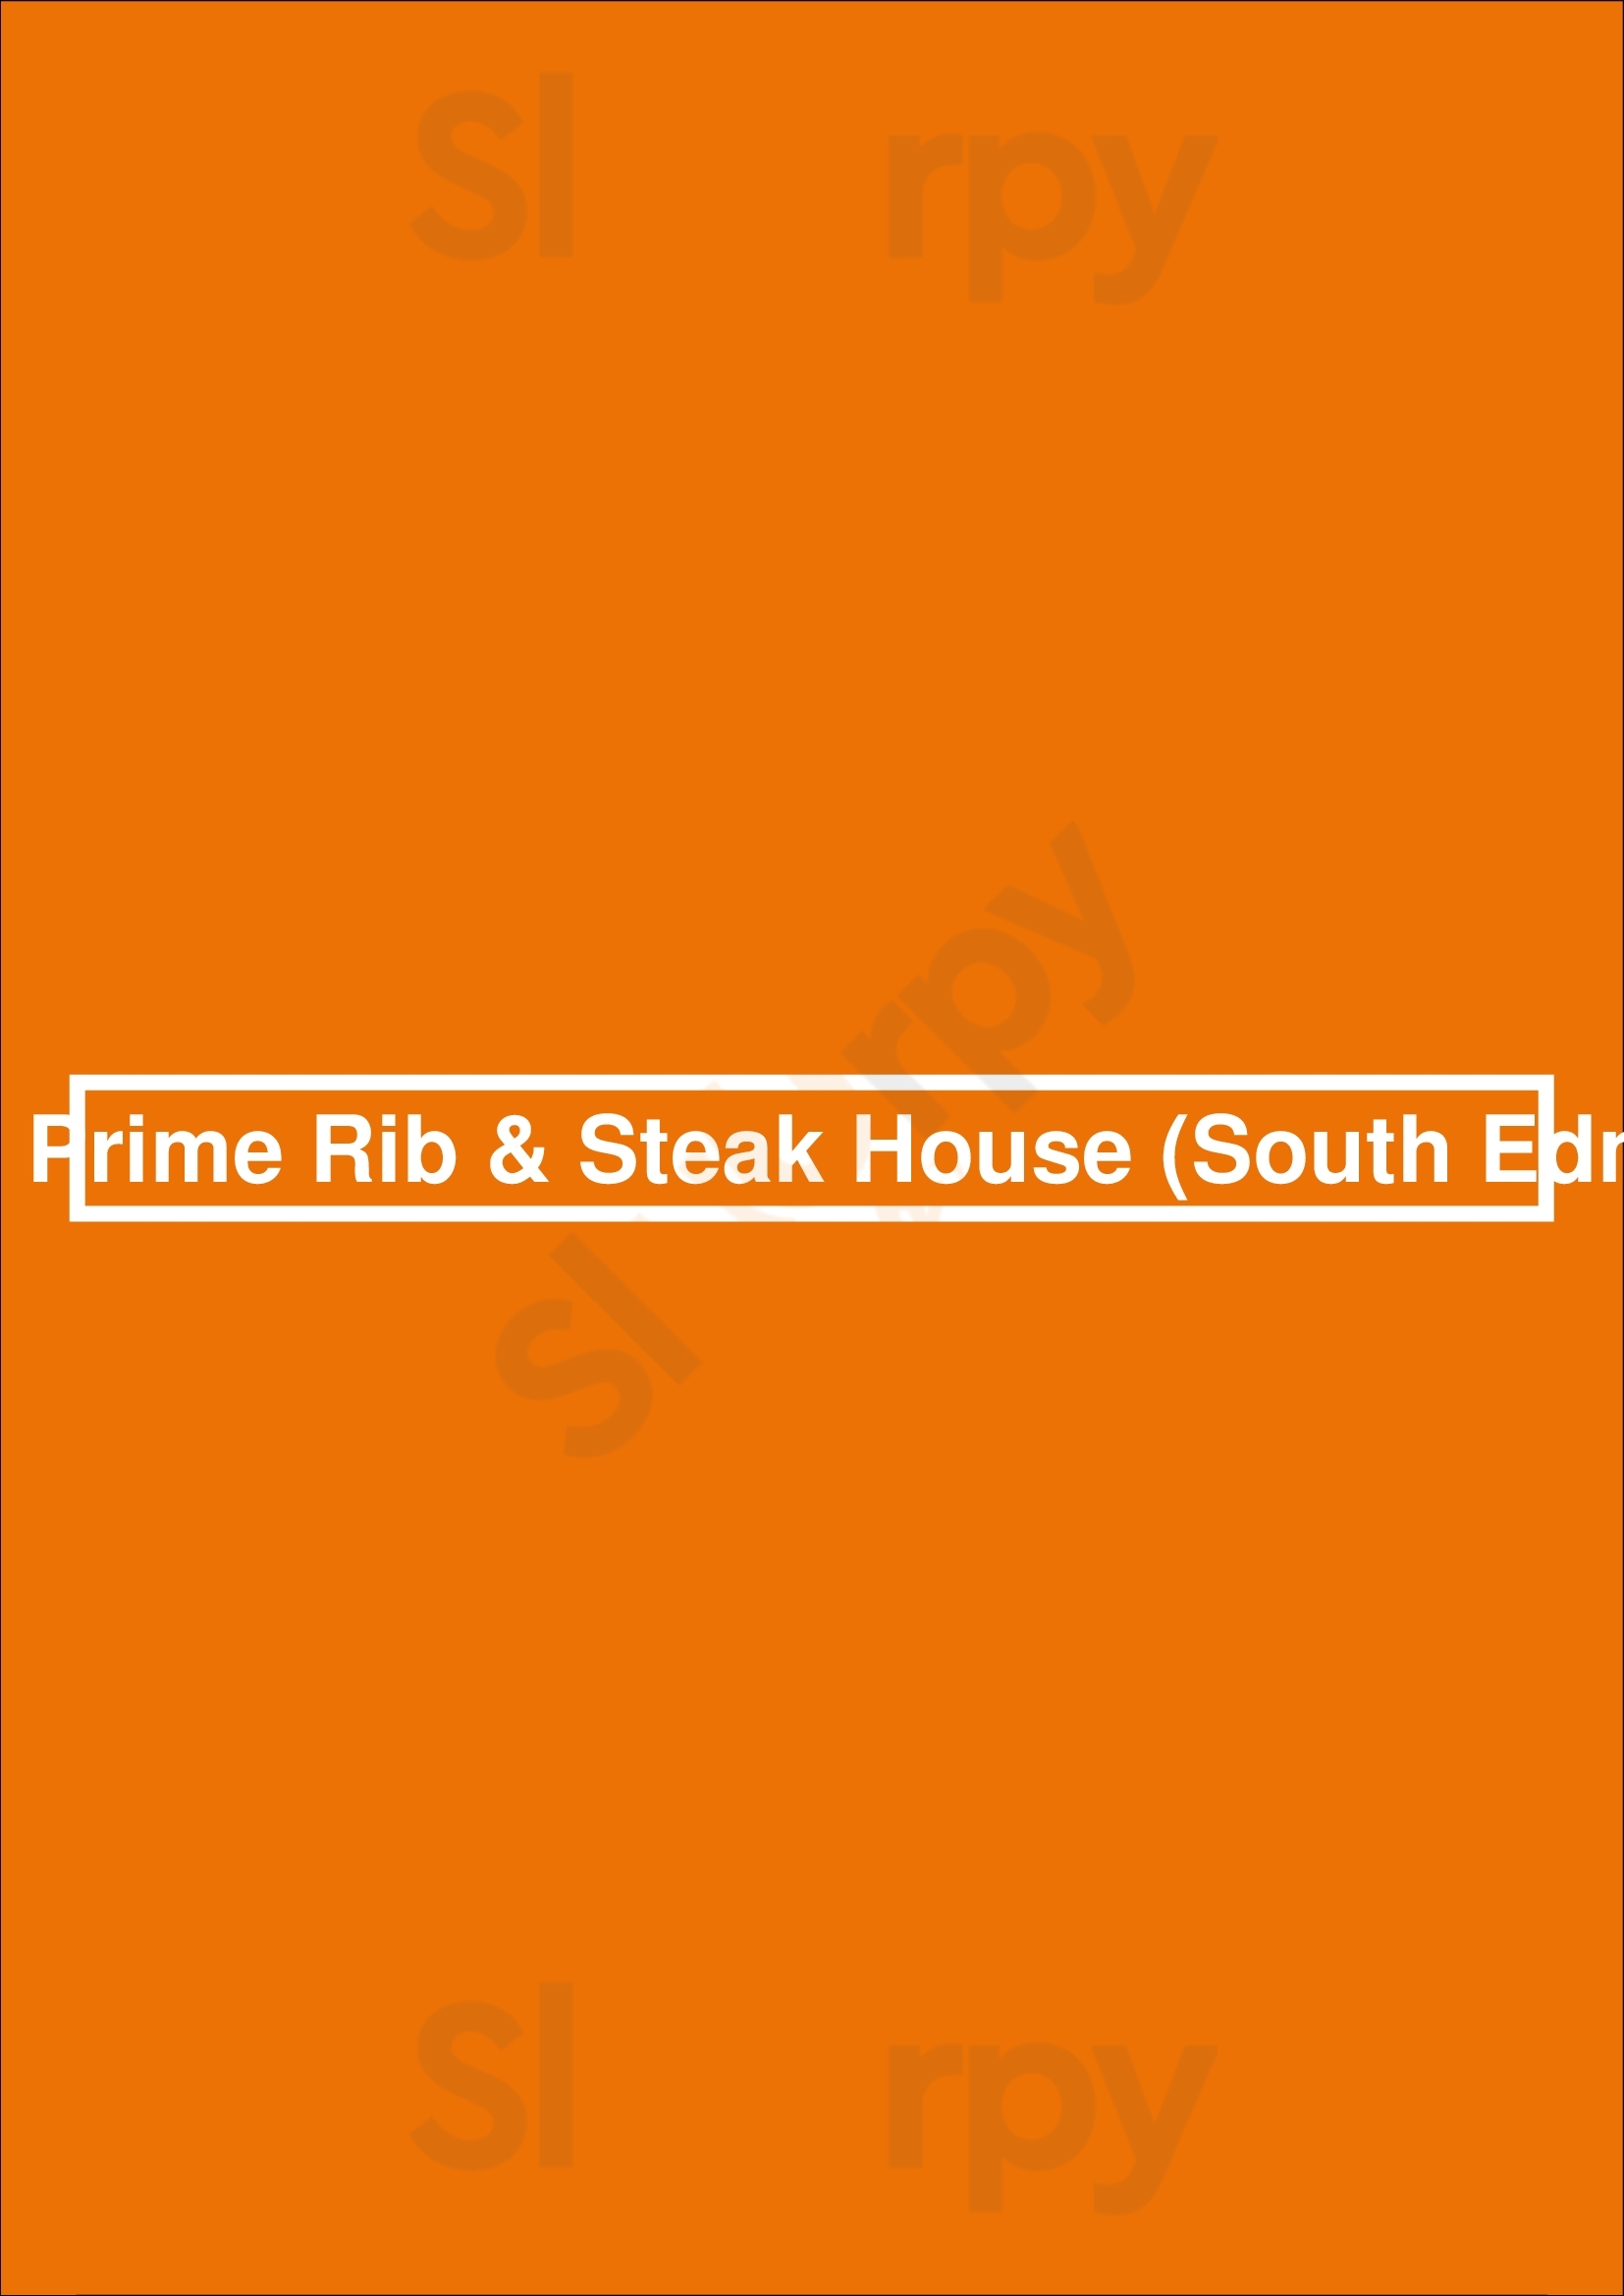 Sawmill Prime Rib & Steak House (south Edmonton) Edmonton Menu - 1